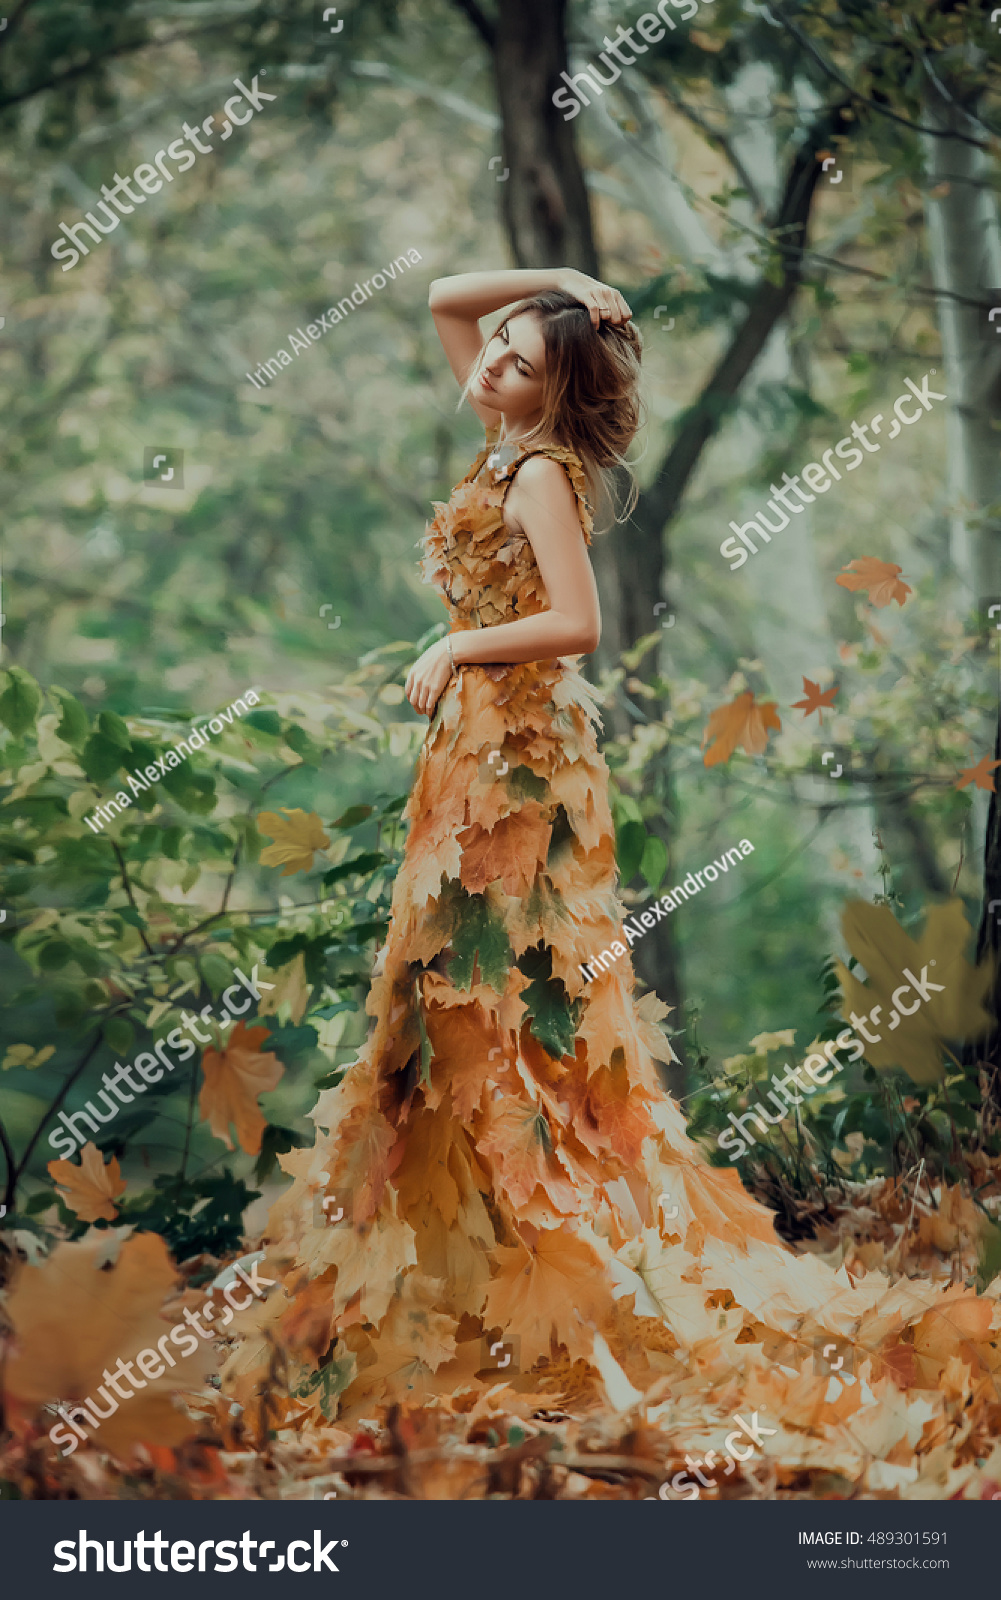 15,391 Autumn queen Images, Stock Photos & Vectors | Shutterstock